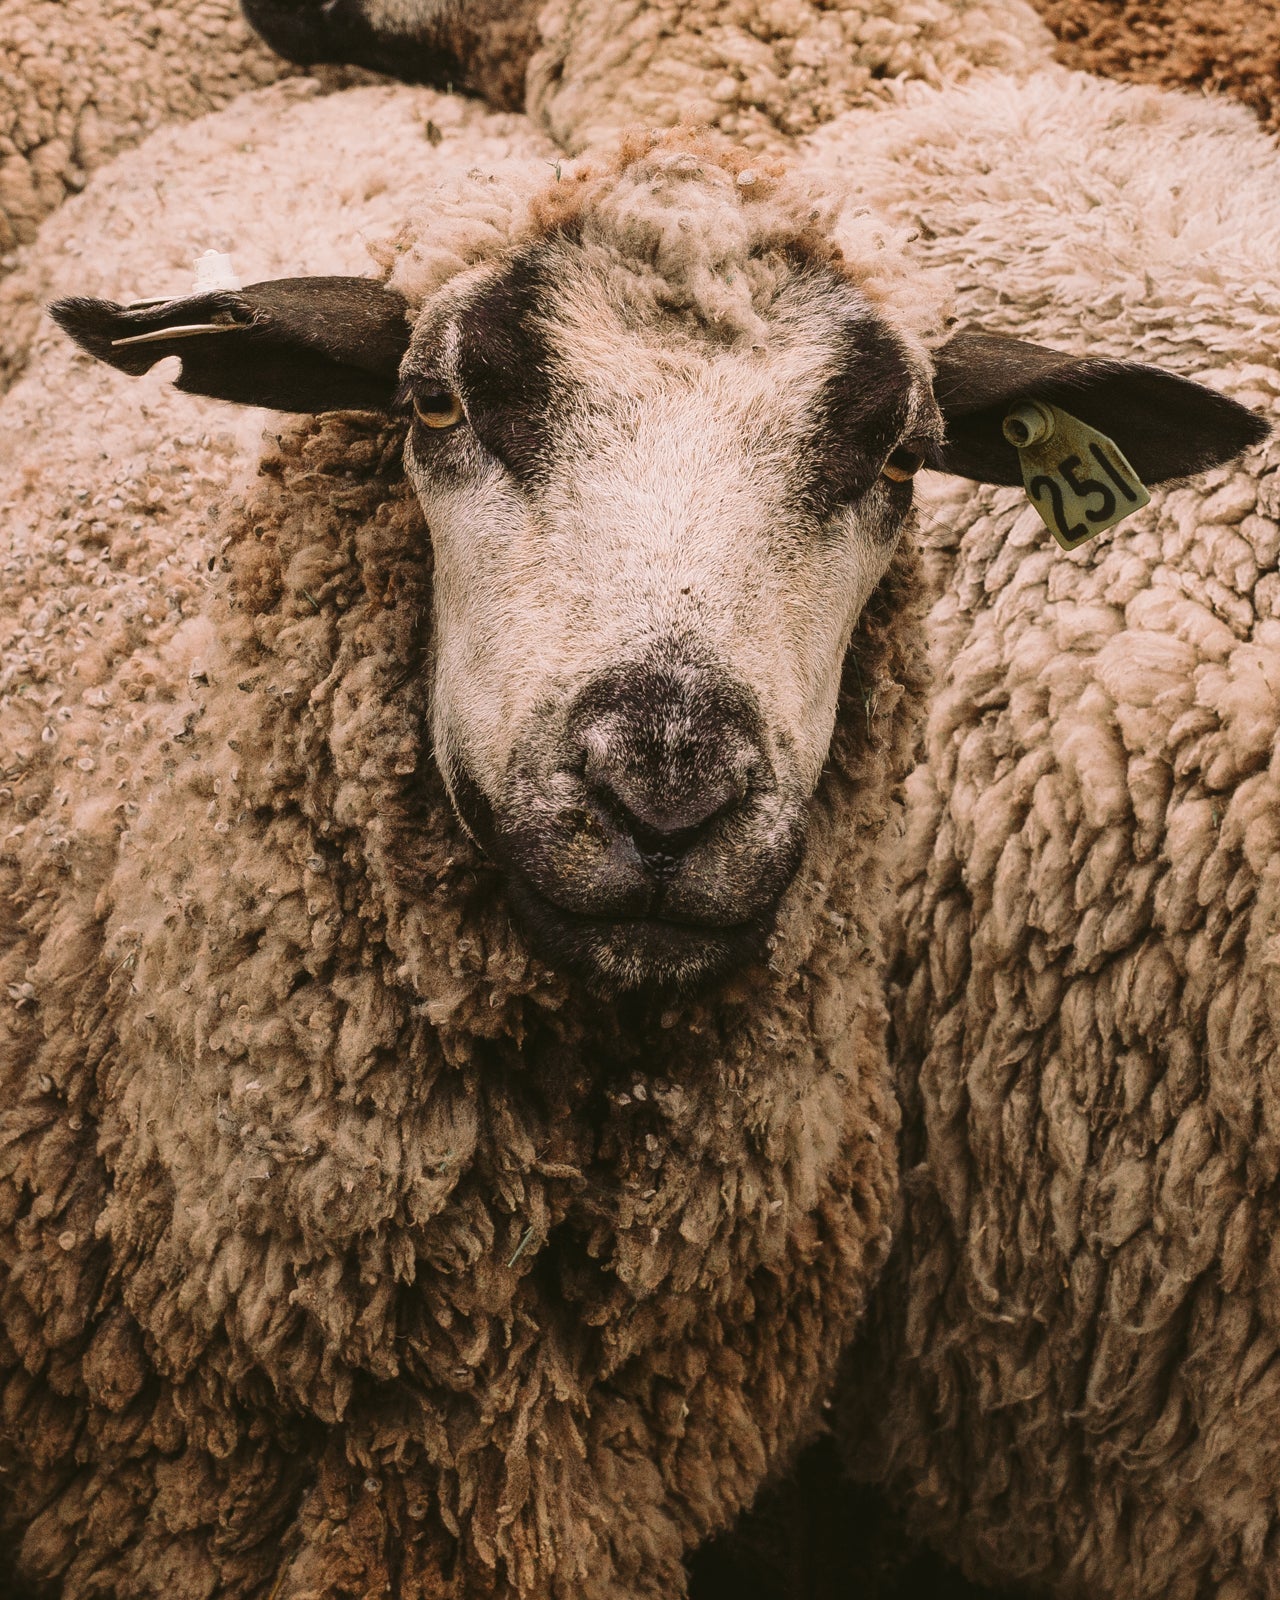 Shear: CVM & Romeldale